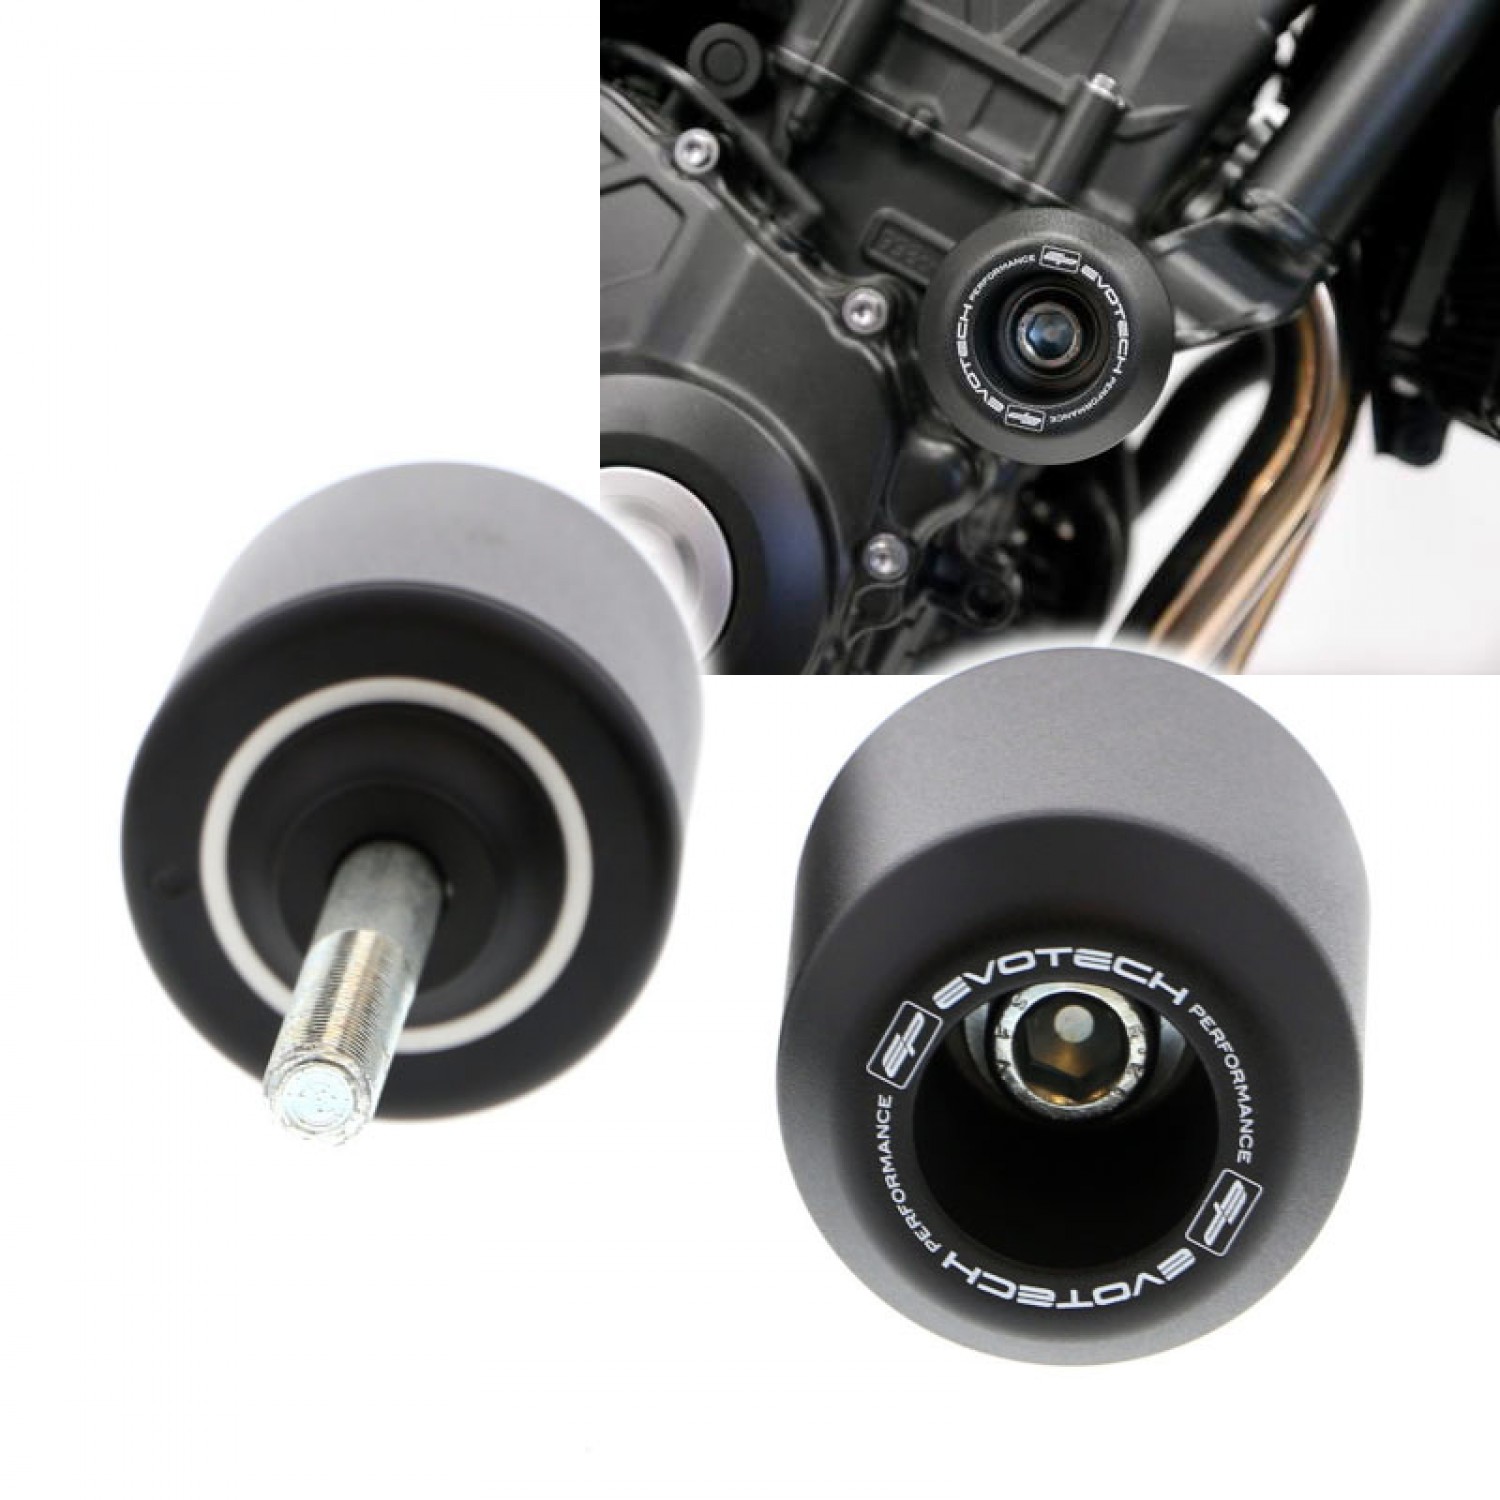 Tampons CB1000 R 08-16 Paire de tampons de Protection Moteur roulettes de Protections pour Honda CB1000 R 2008-2016 